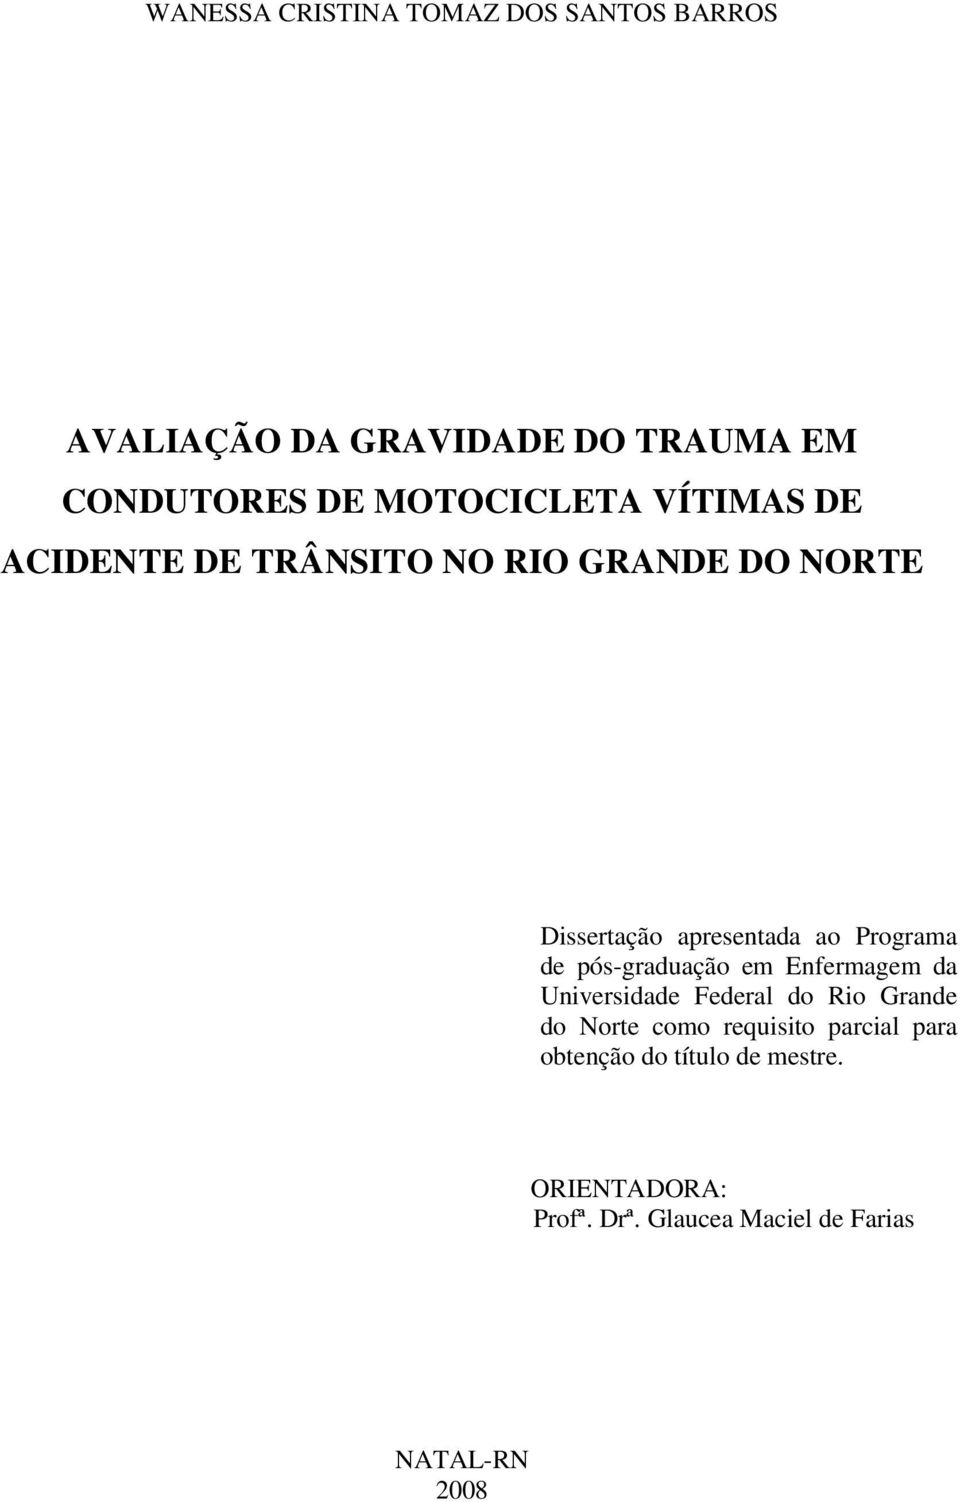 Programa de pós-graduação em Enfermagem da Universidade Federal do Rio Grande do Norte como